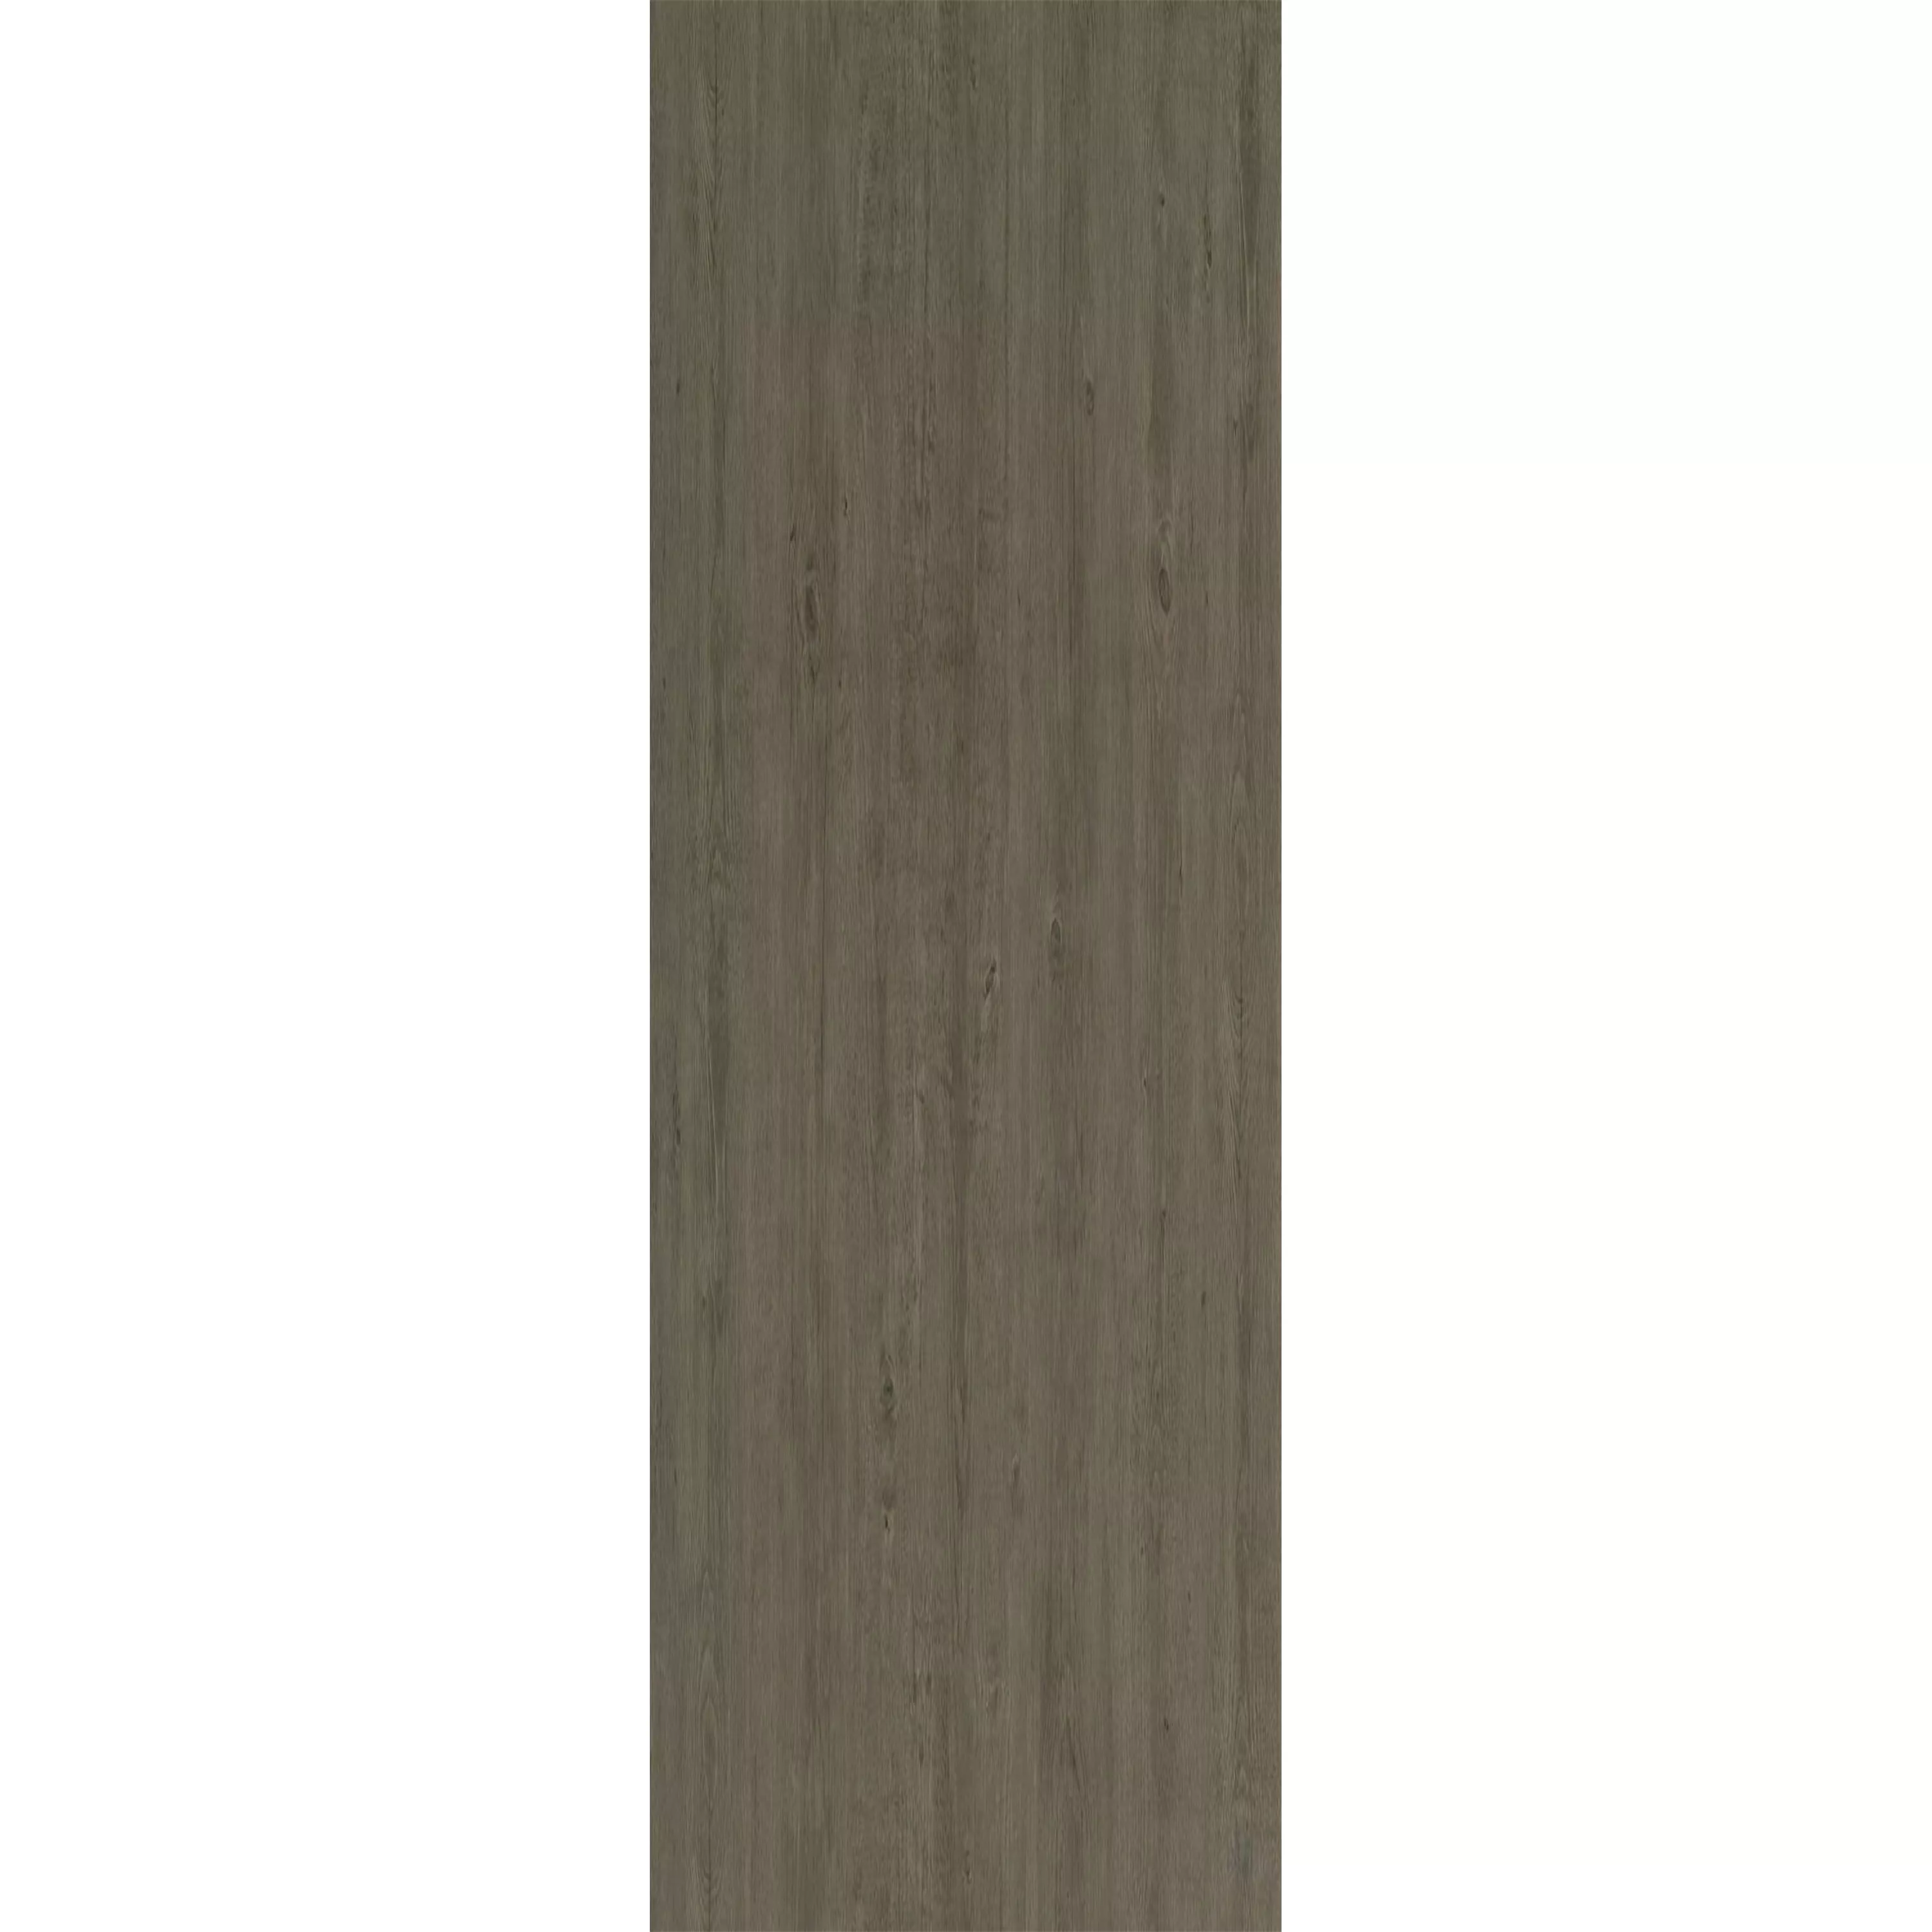 Piso De Vinil Sistema De Clique Woodford Taupe 17,2x121cm